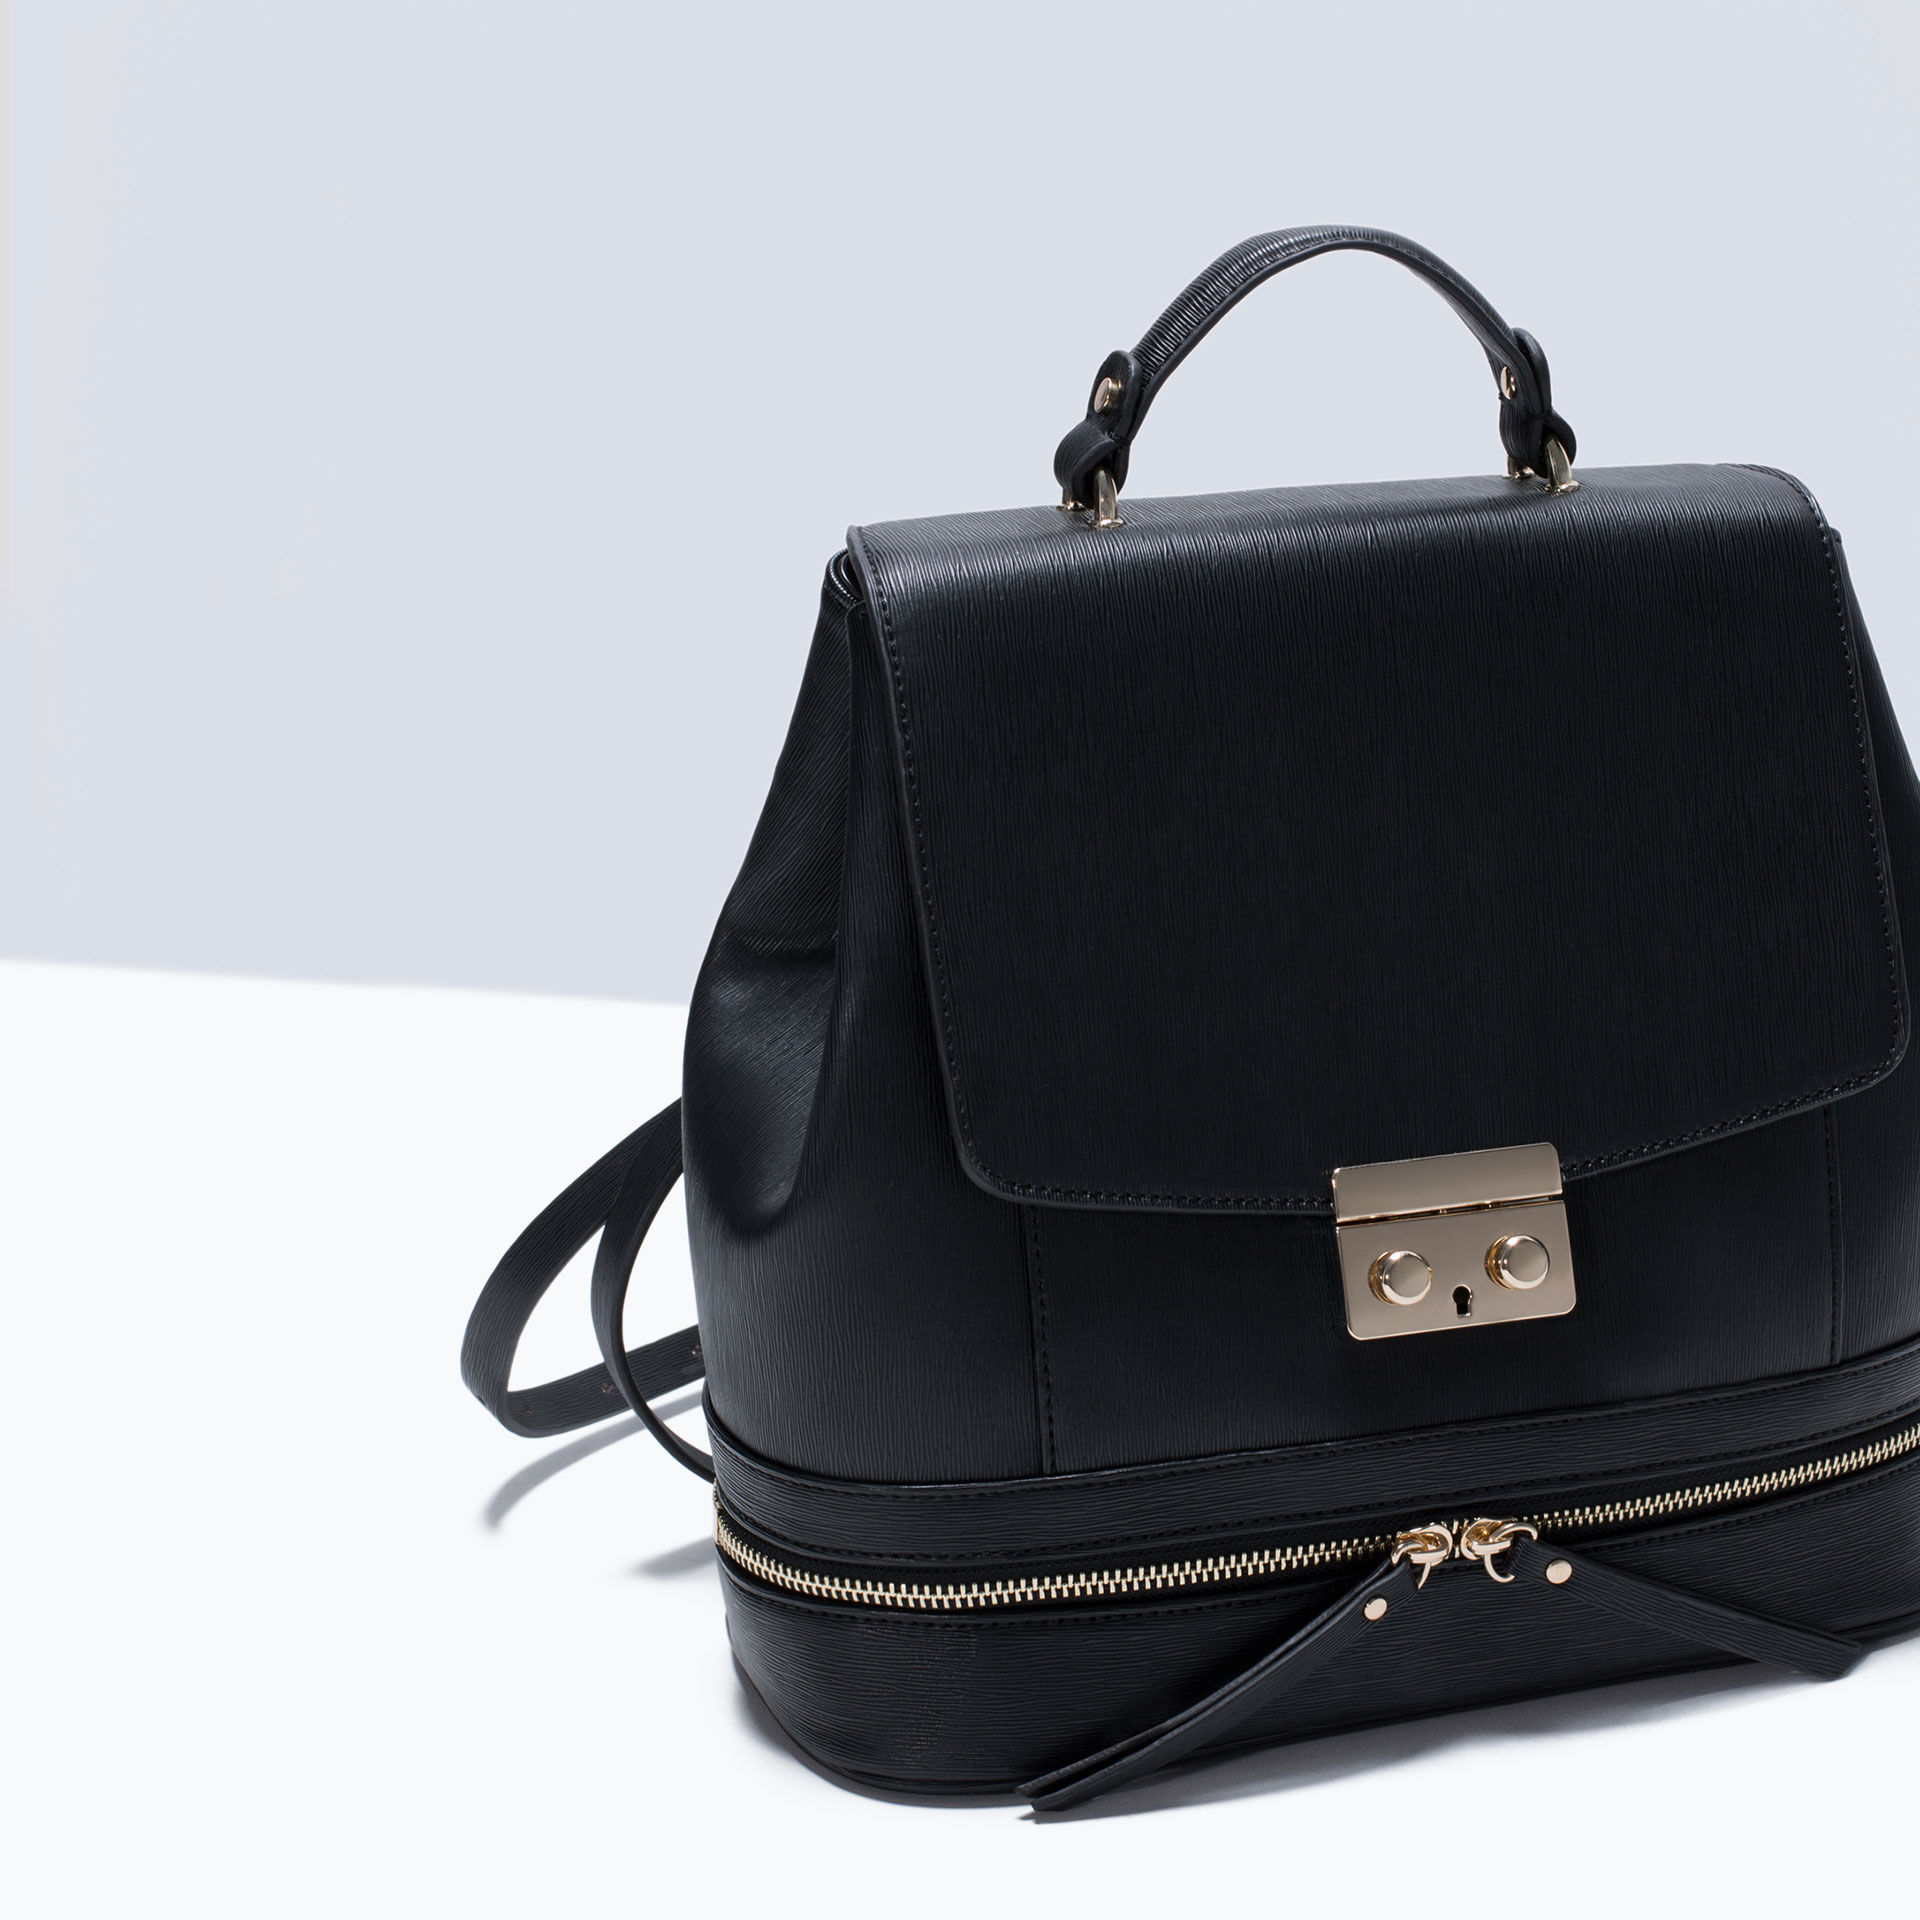 Zara Lady Like Backpack in Black | Lyst